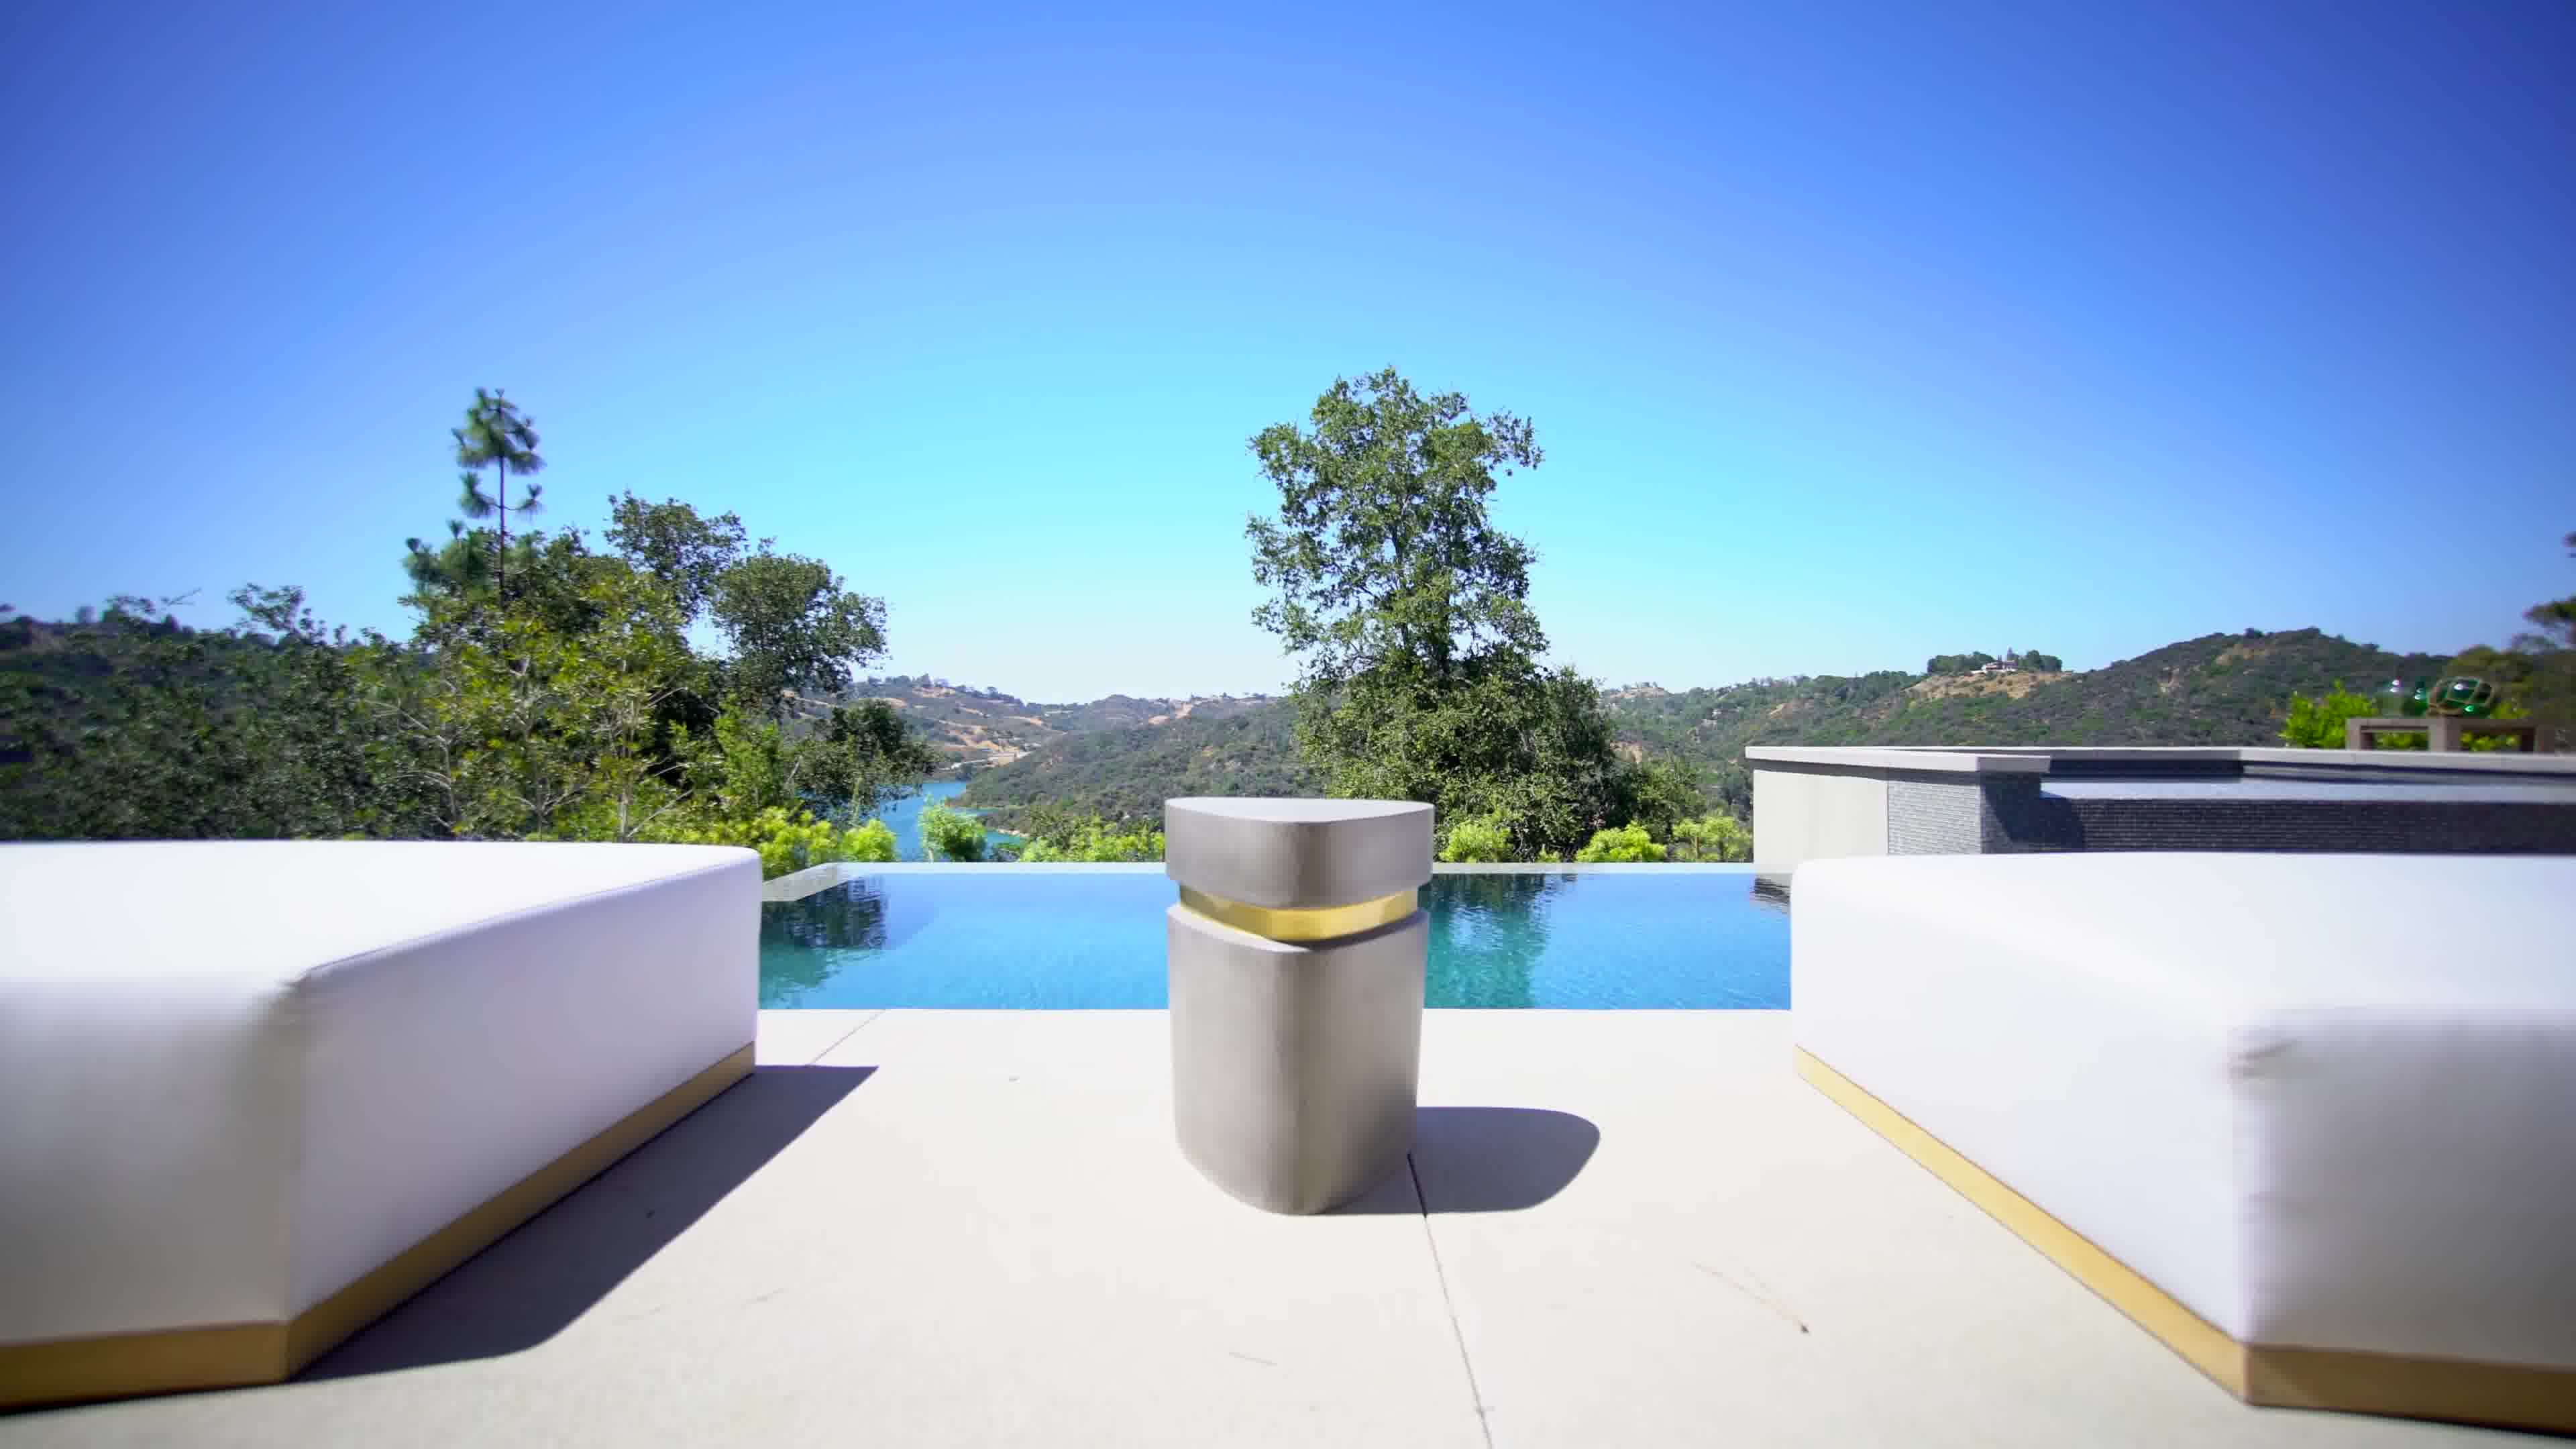 2017年出售的一套洛杉矶山顶湖景豪宅1925万美元